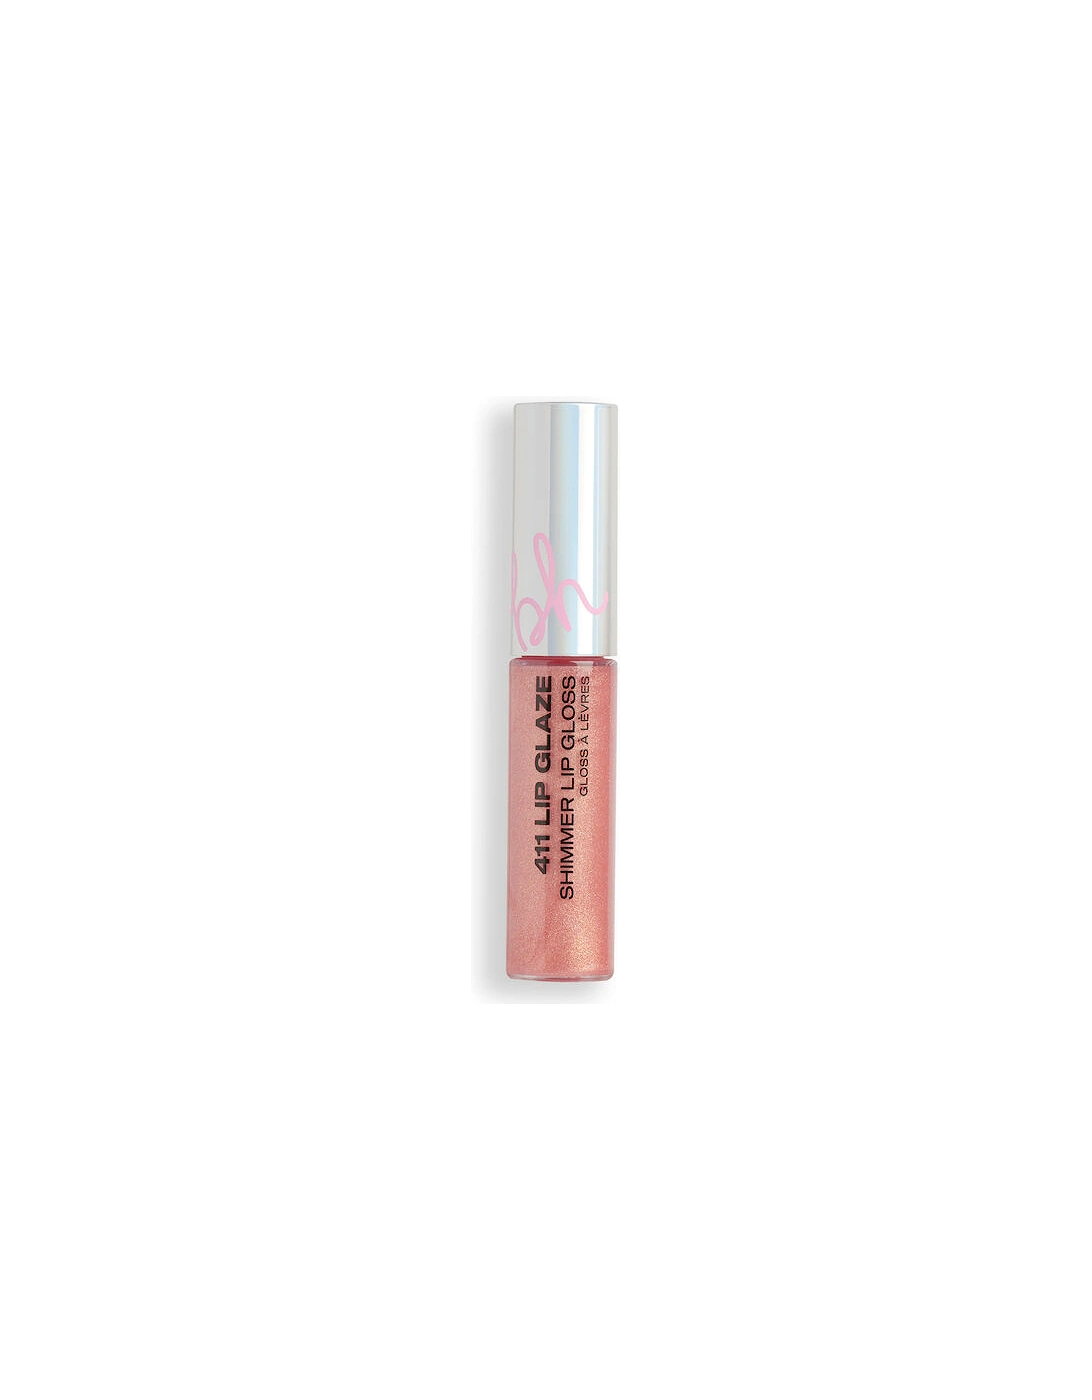 BH 411 Lip Glaze Shimmer Gloss Melrose, 2 of 1